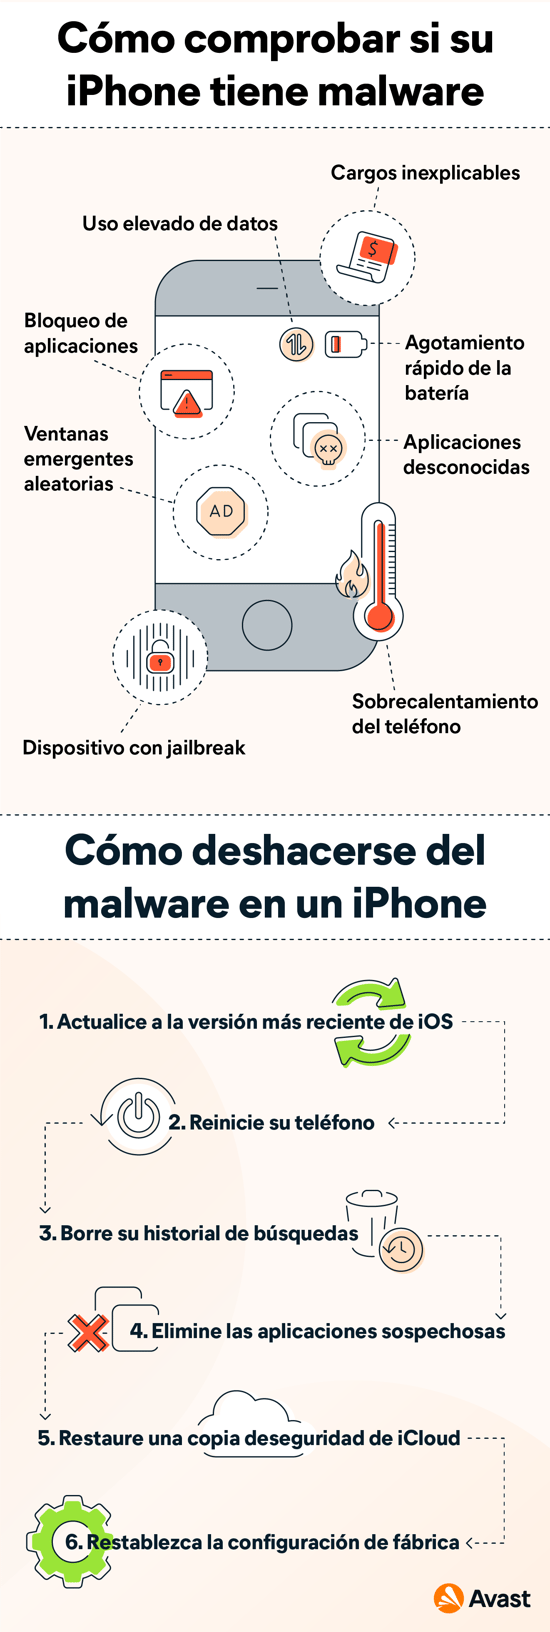 Cómo detectar virus y eliminar malware en iPhone.